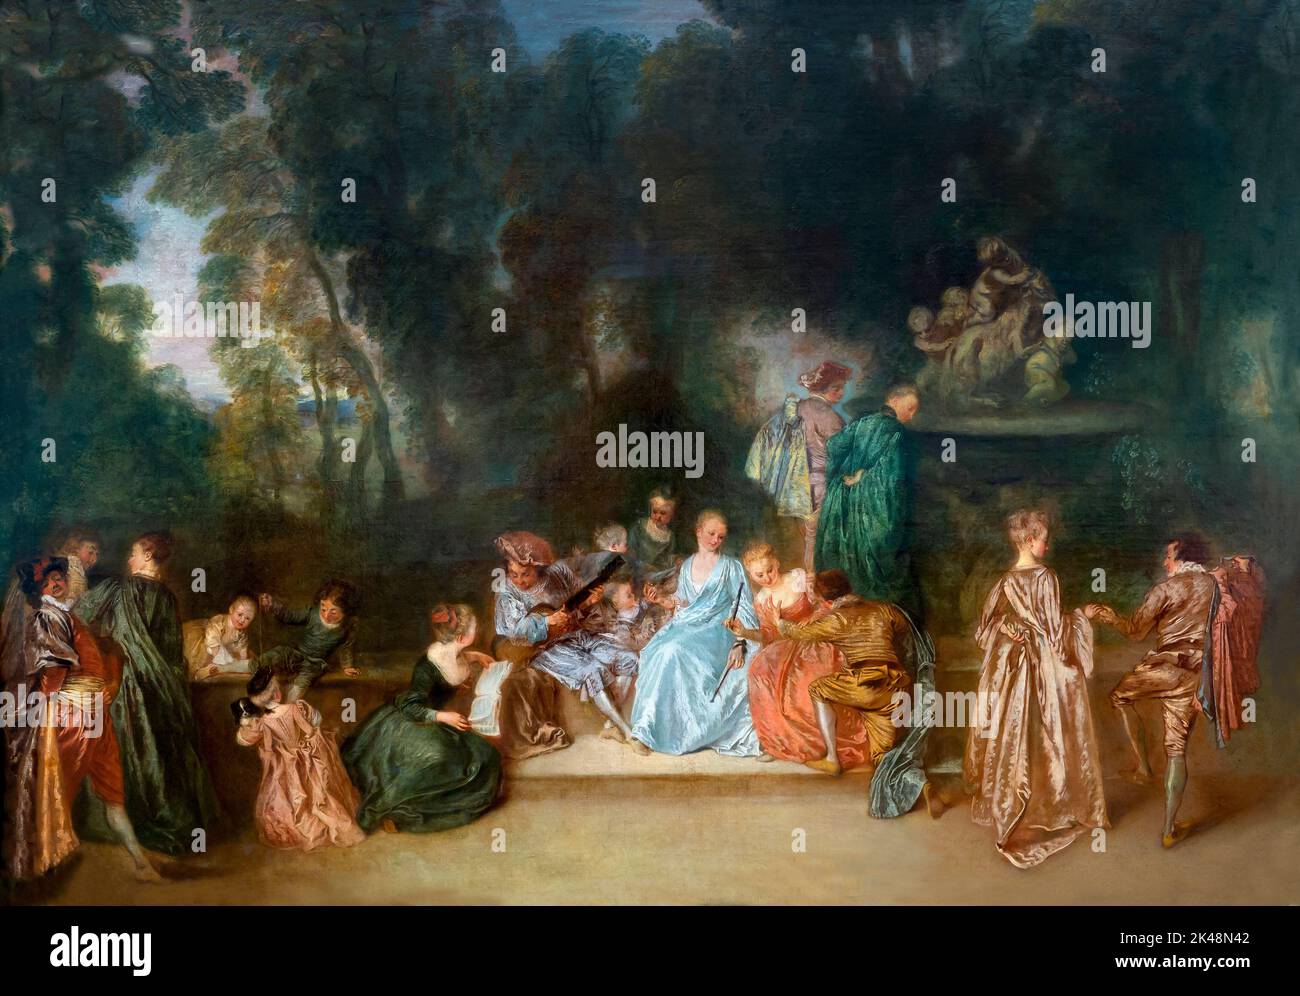 Company in the Outdoors, Jean Antoine Watteau, 1718-1721, Gemaldegalerie, Berlín, Alemania, Europa Foto de stock